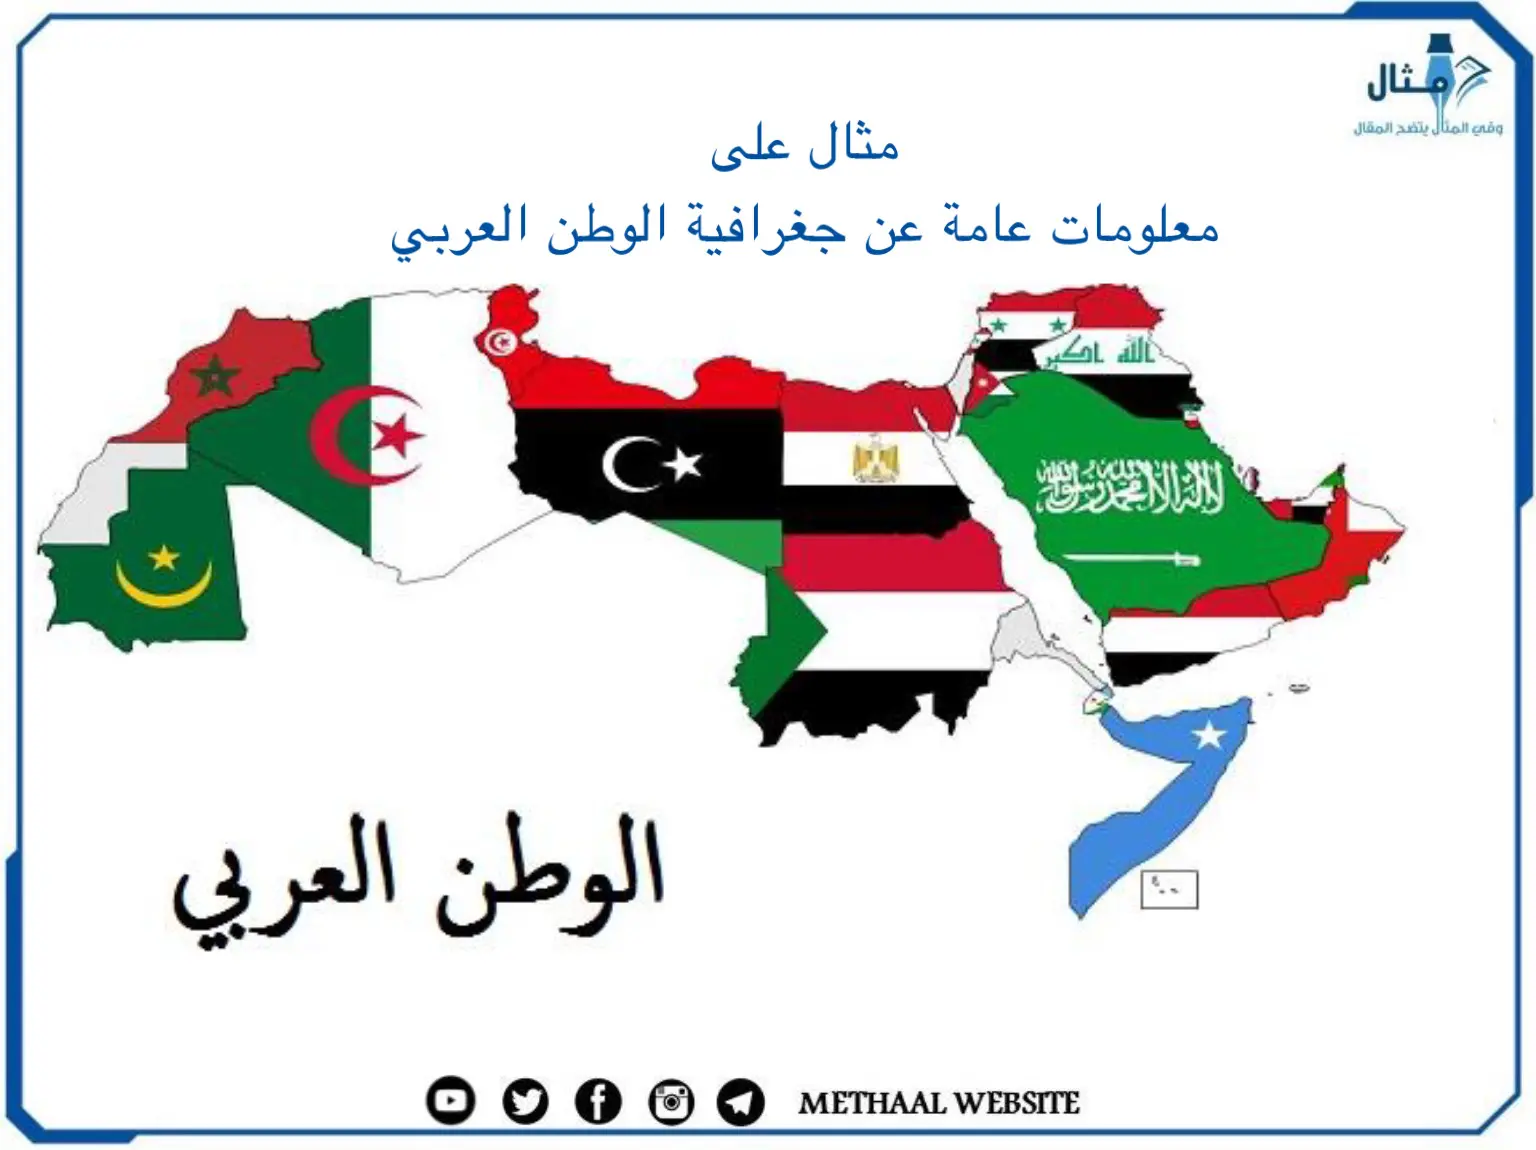 مثال على معلومات عامة عن جغرافية الوطن العربي